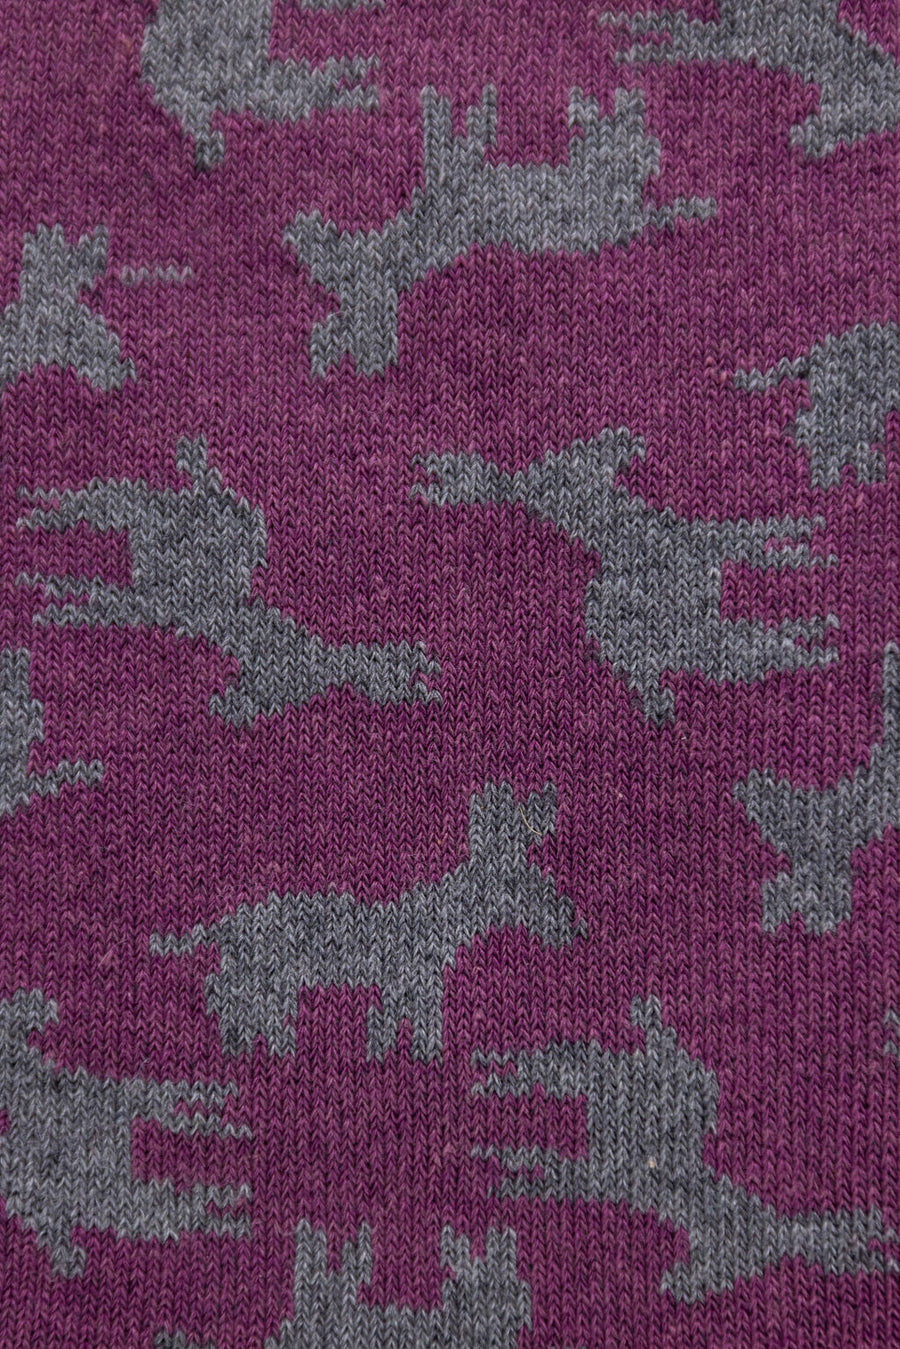 Purple and Gray Asini Unisex Socks